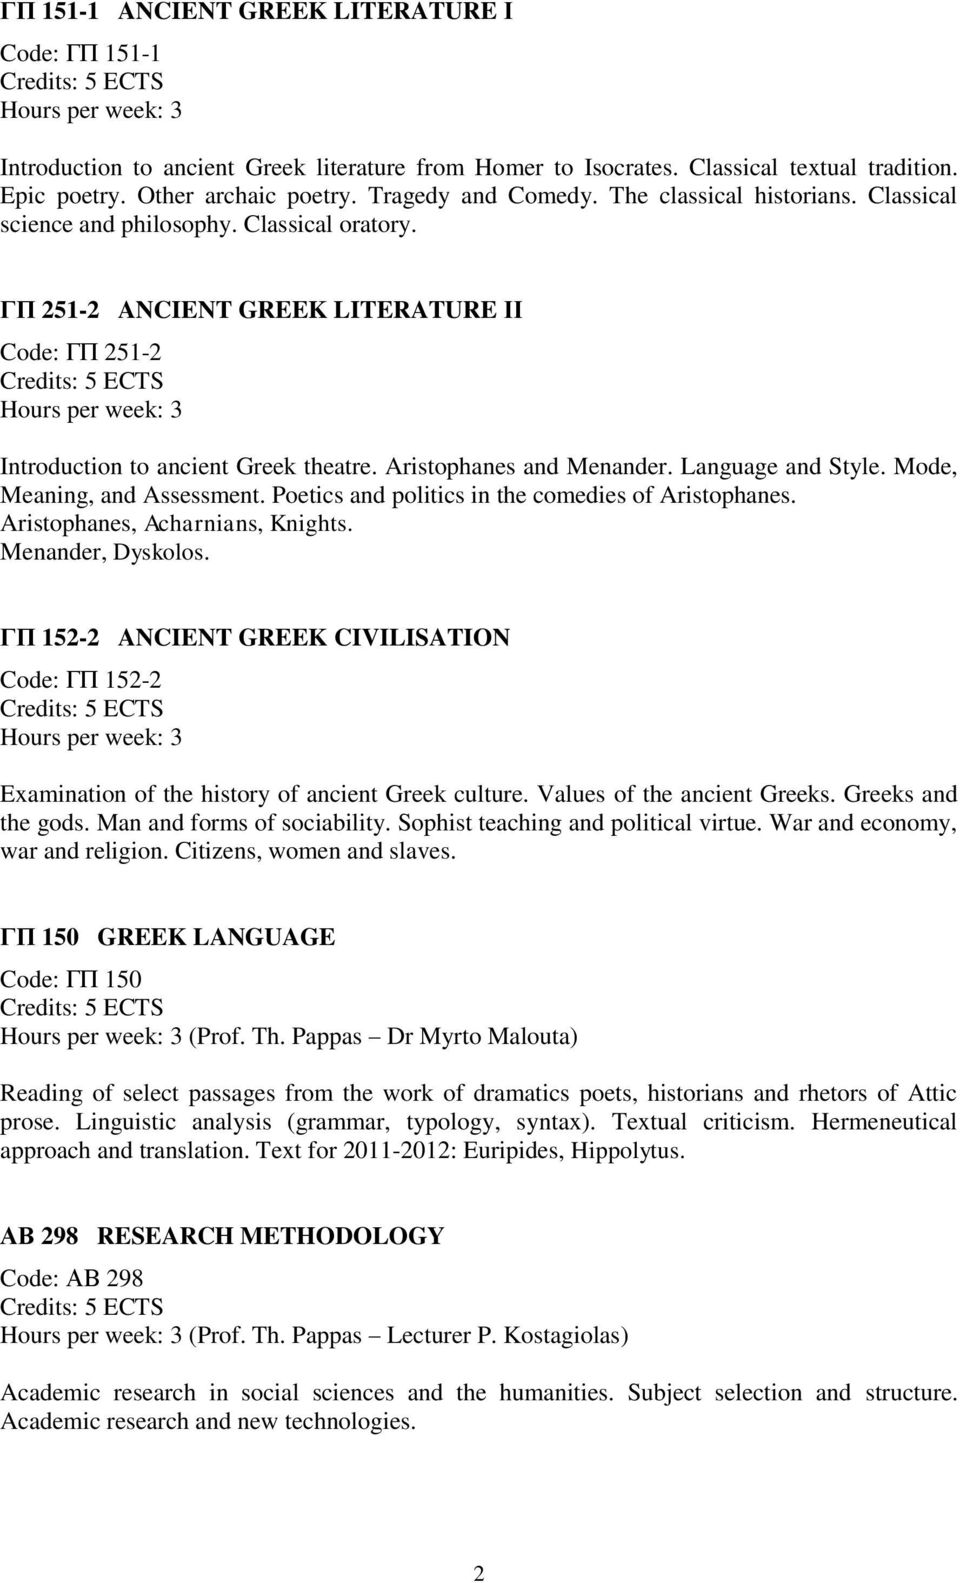 ΓΠ 251-2 ANCIENT GREEK LITERATURE ΙΙ Code: ΓΠ 251-2 Hours per week: 3 Introduction to ancient Greek theatre. Aristophanes and Menander. Language and Style. Mode, Meaning, and Assessment.